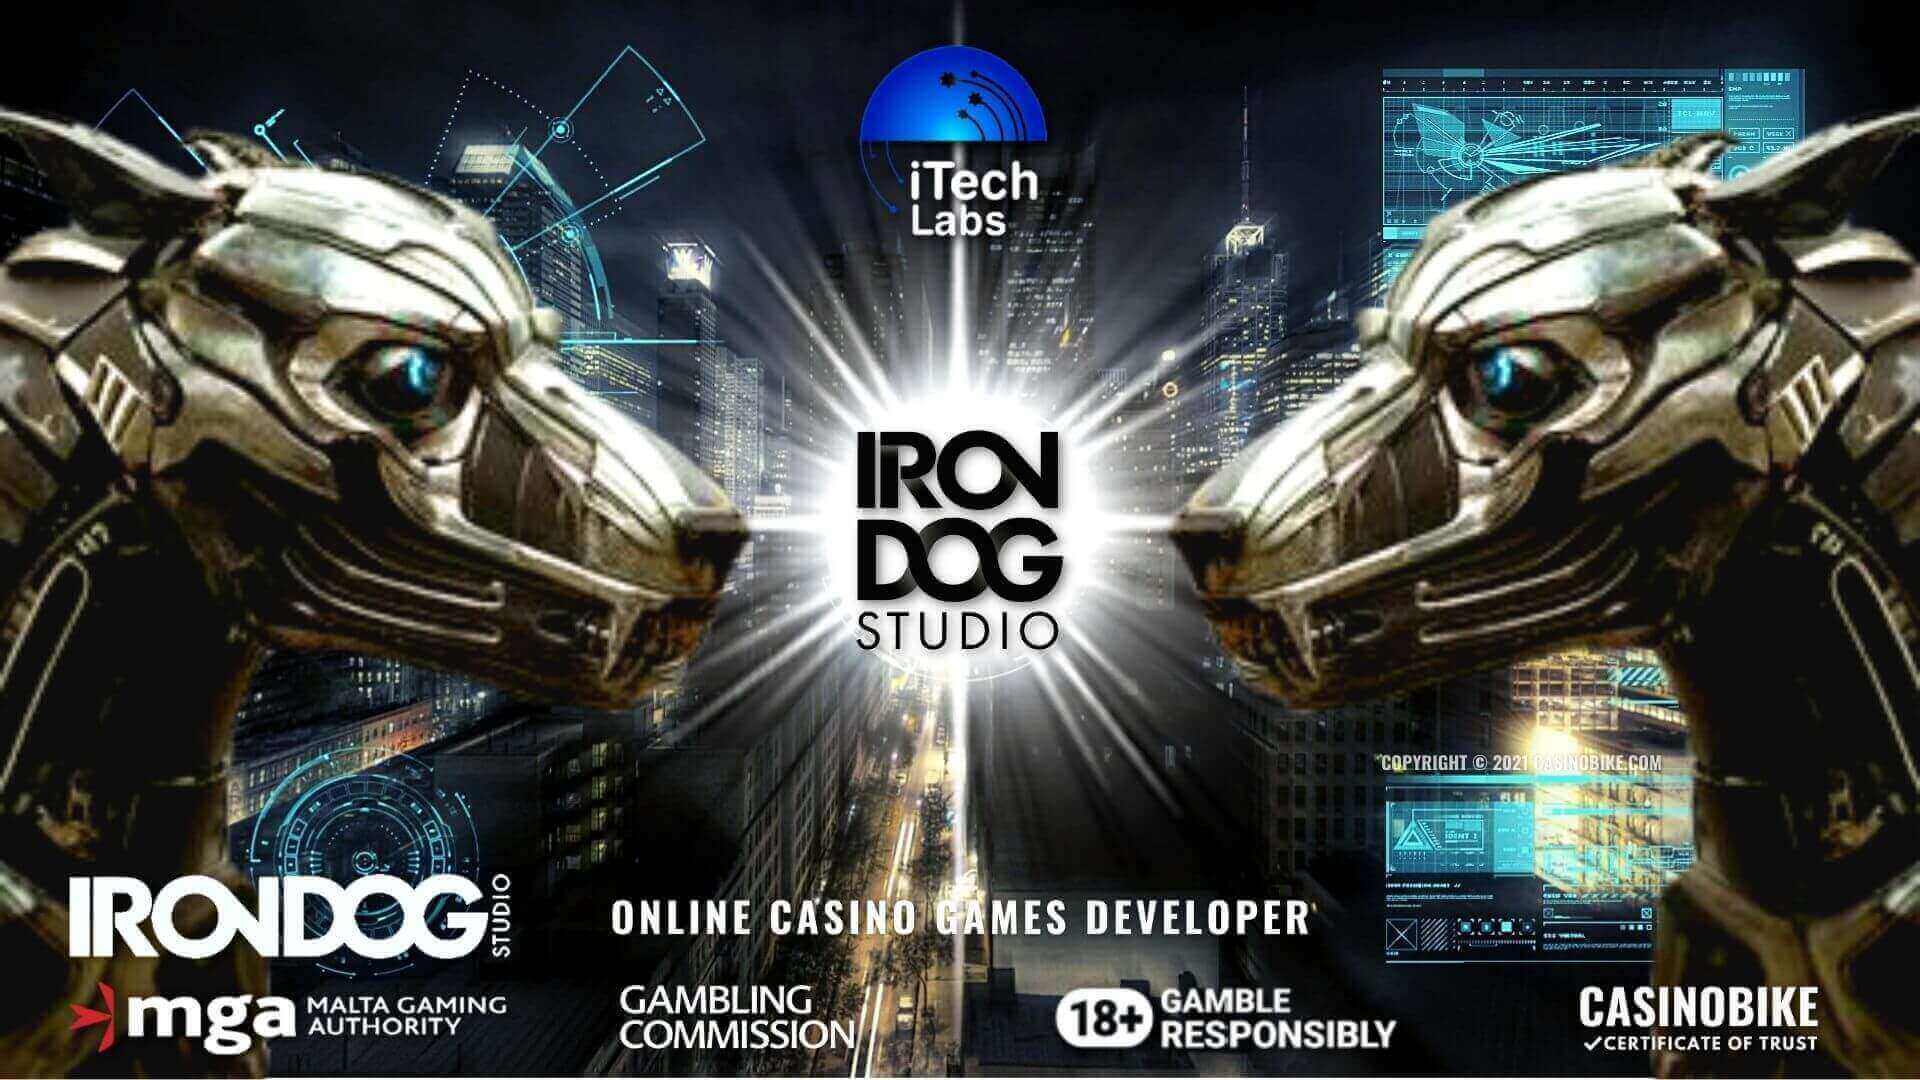 Iron Dog Studio Casino Gaming Provider Review